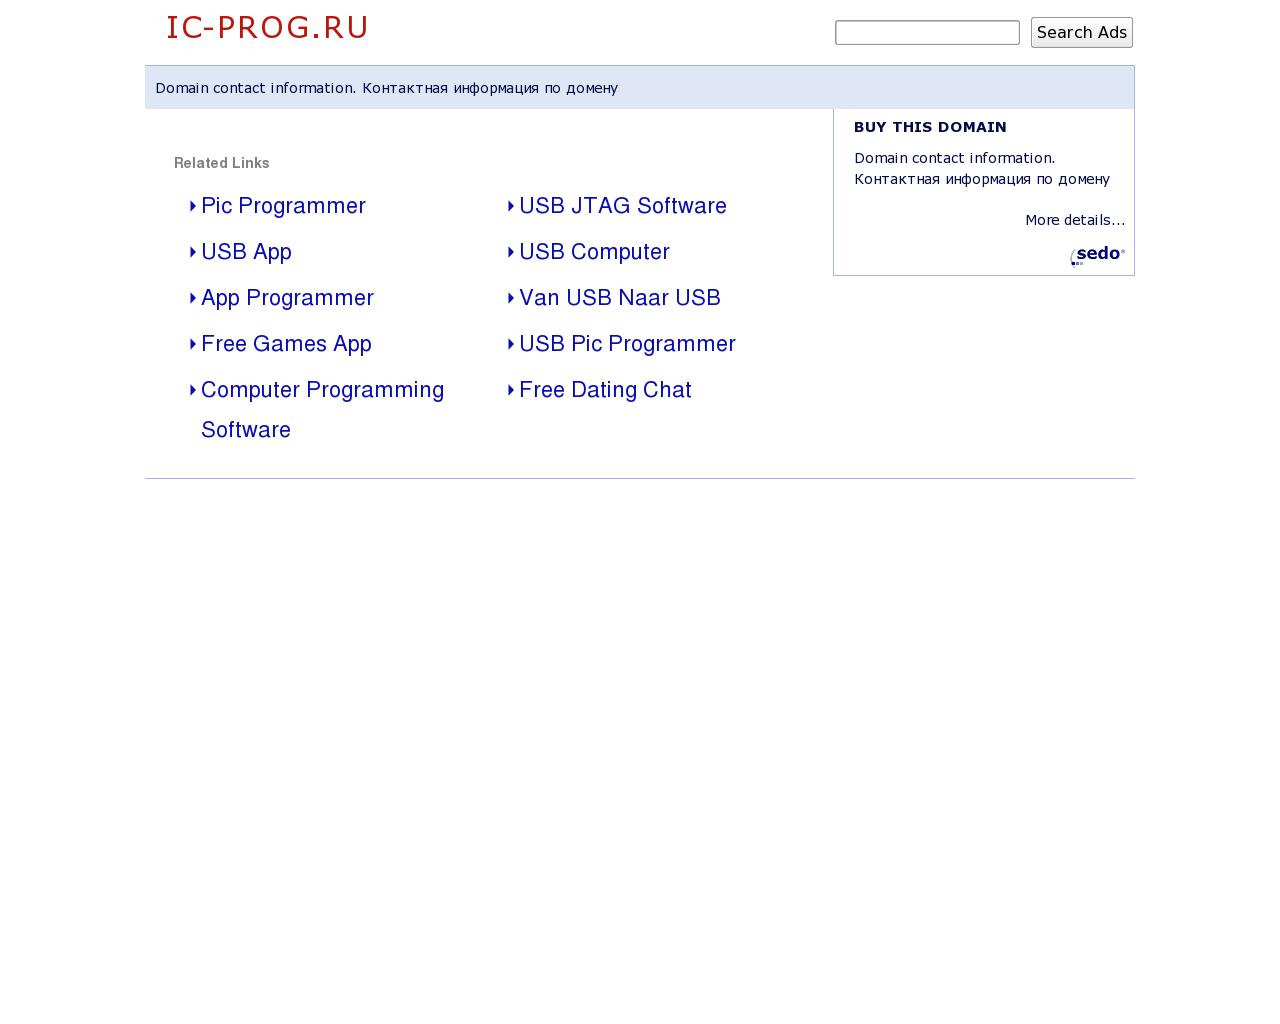 Изображение сайта ic-prog.ru в разрешении 1280x1024